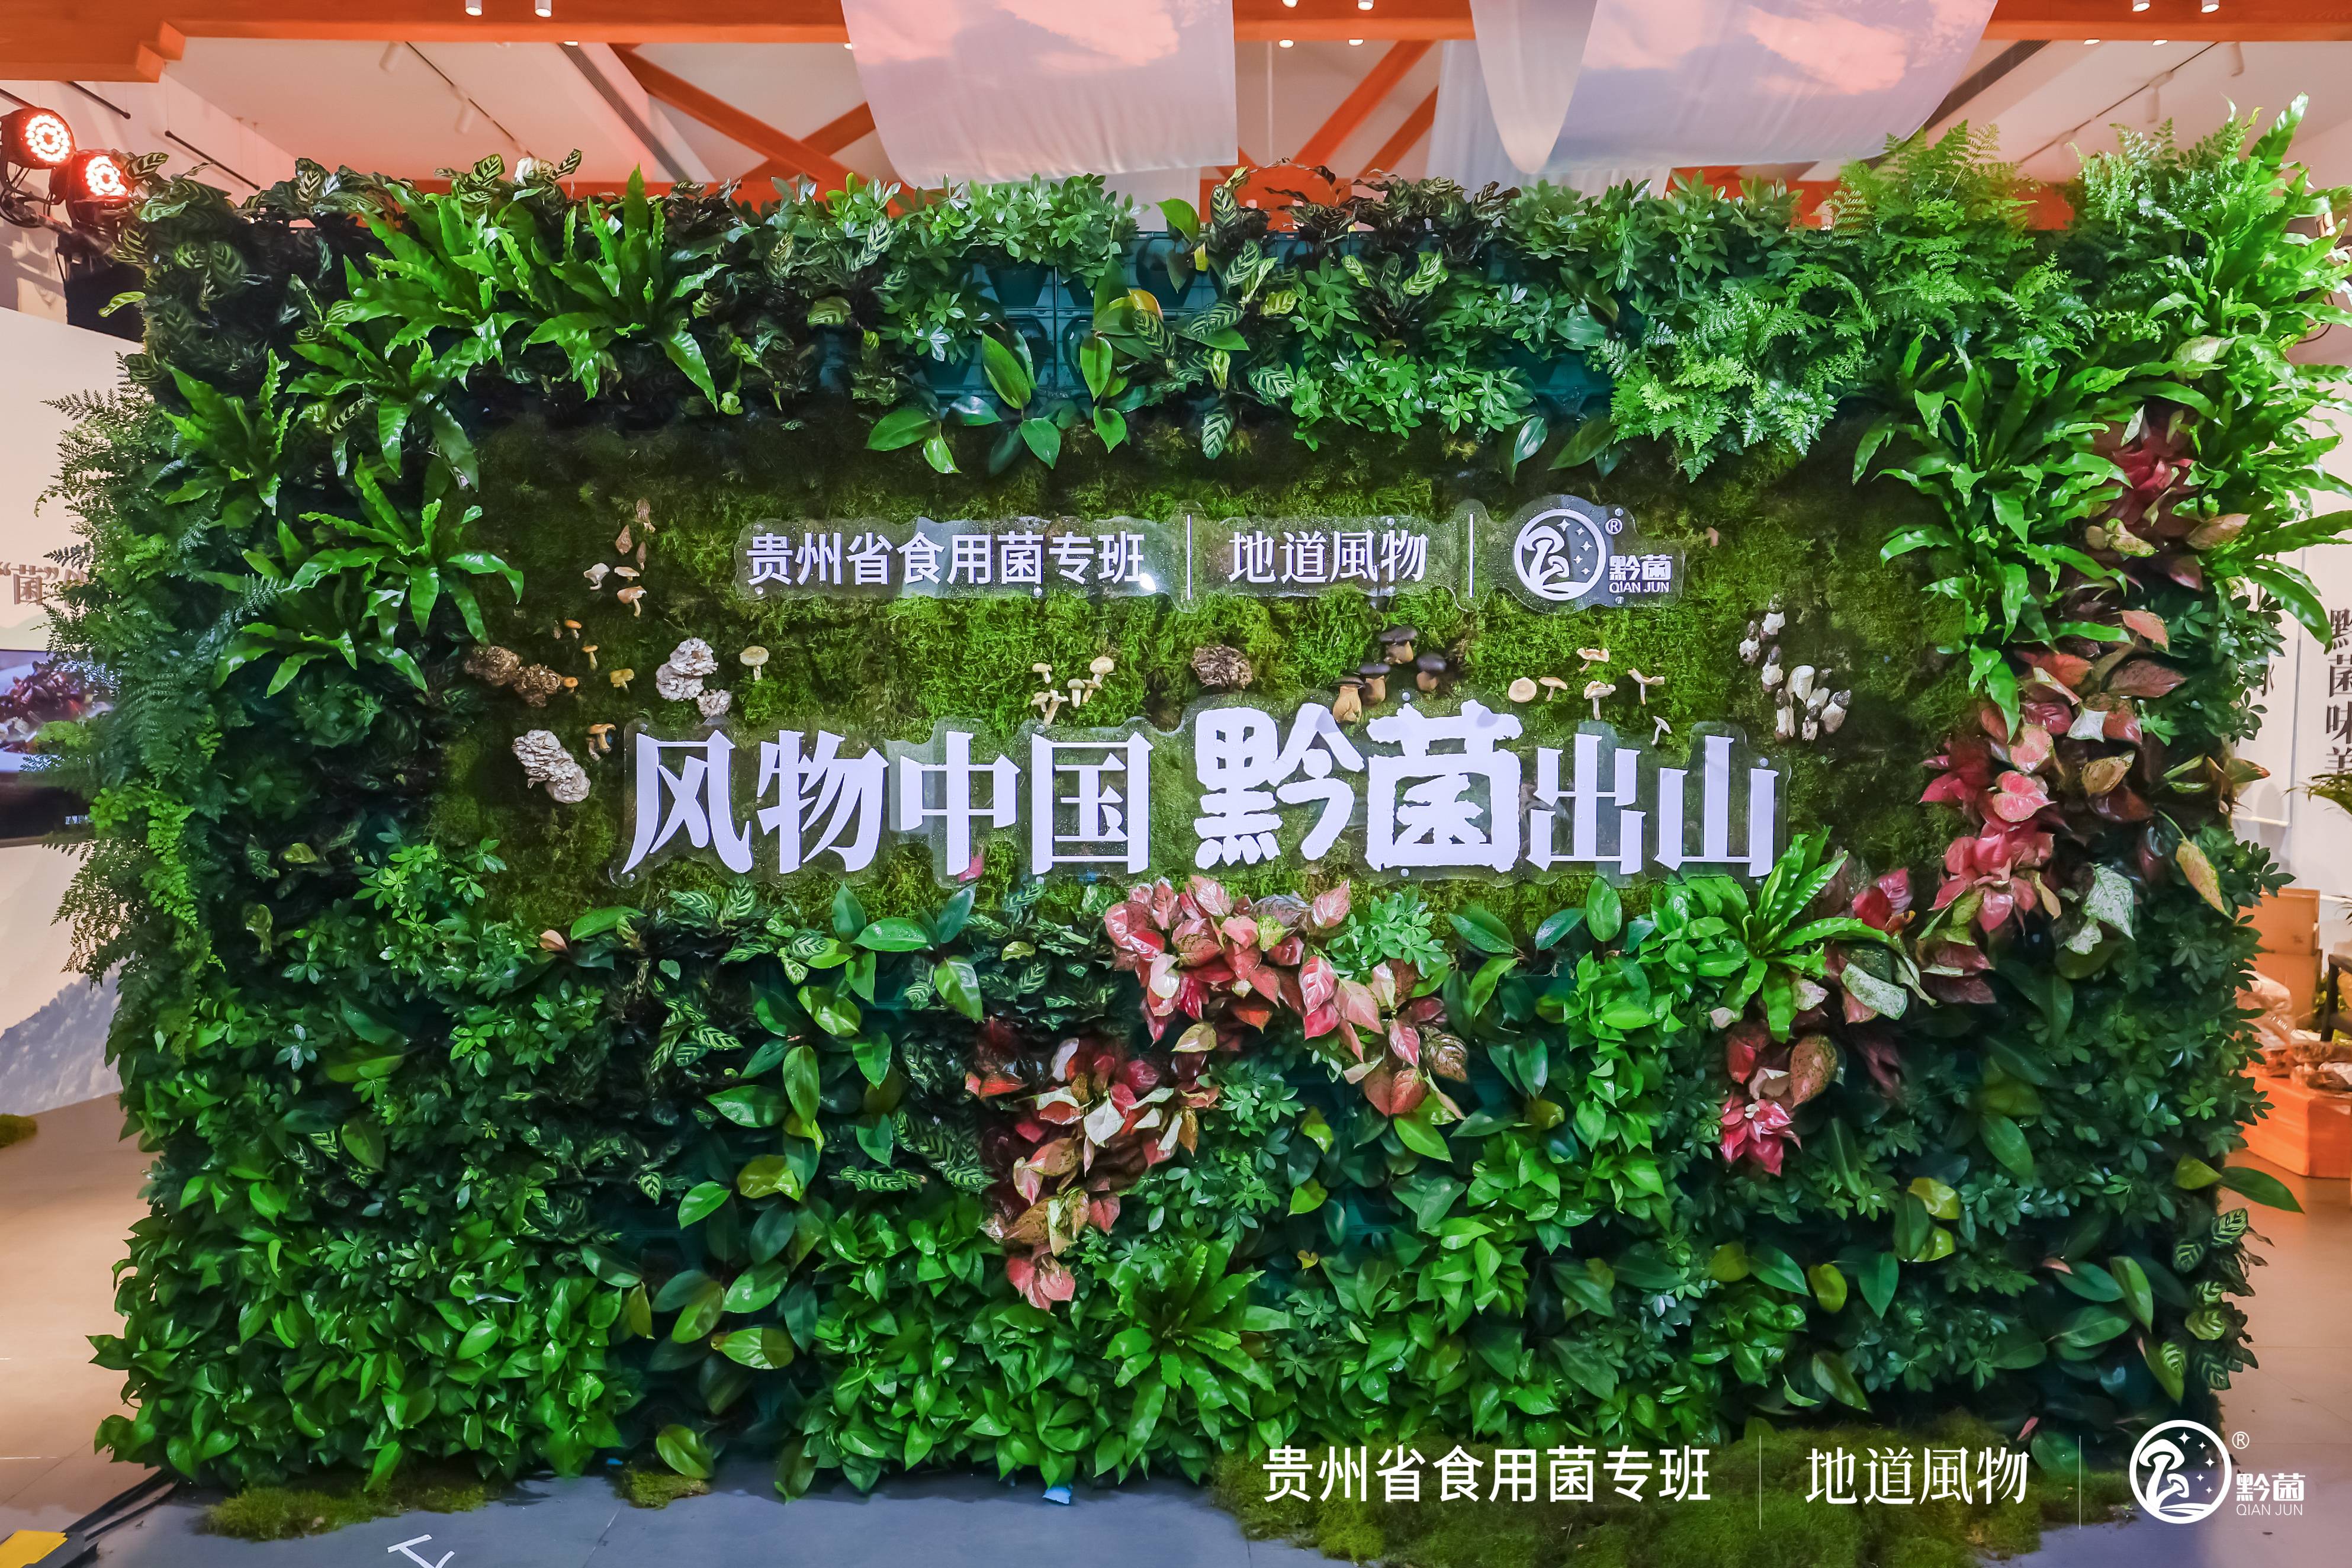 “风物中国·黔菌出山”，贵州省农产品公用品牌“黔菌”北京推介会正式举行